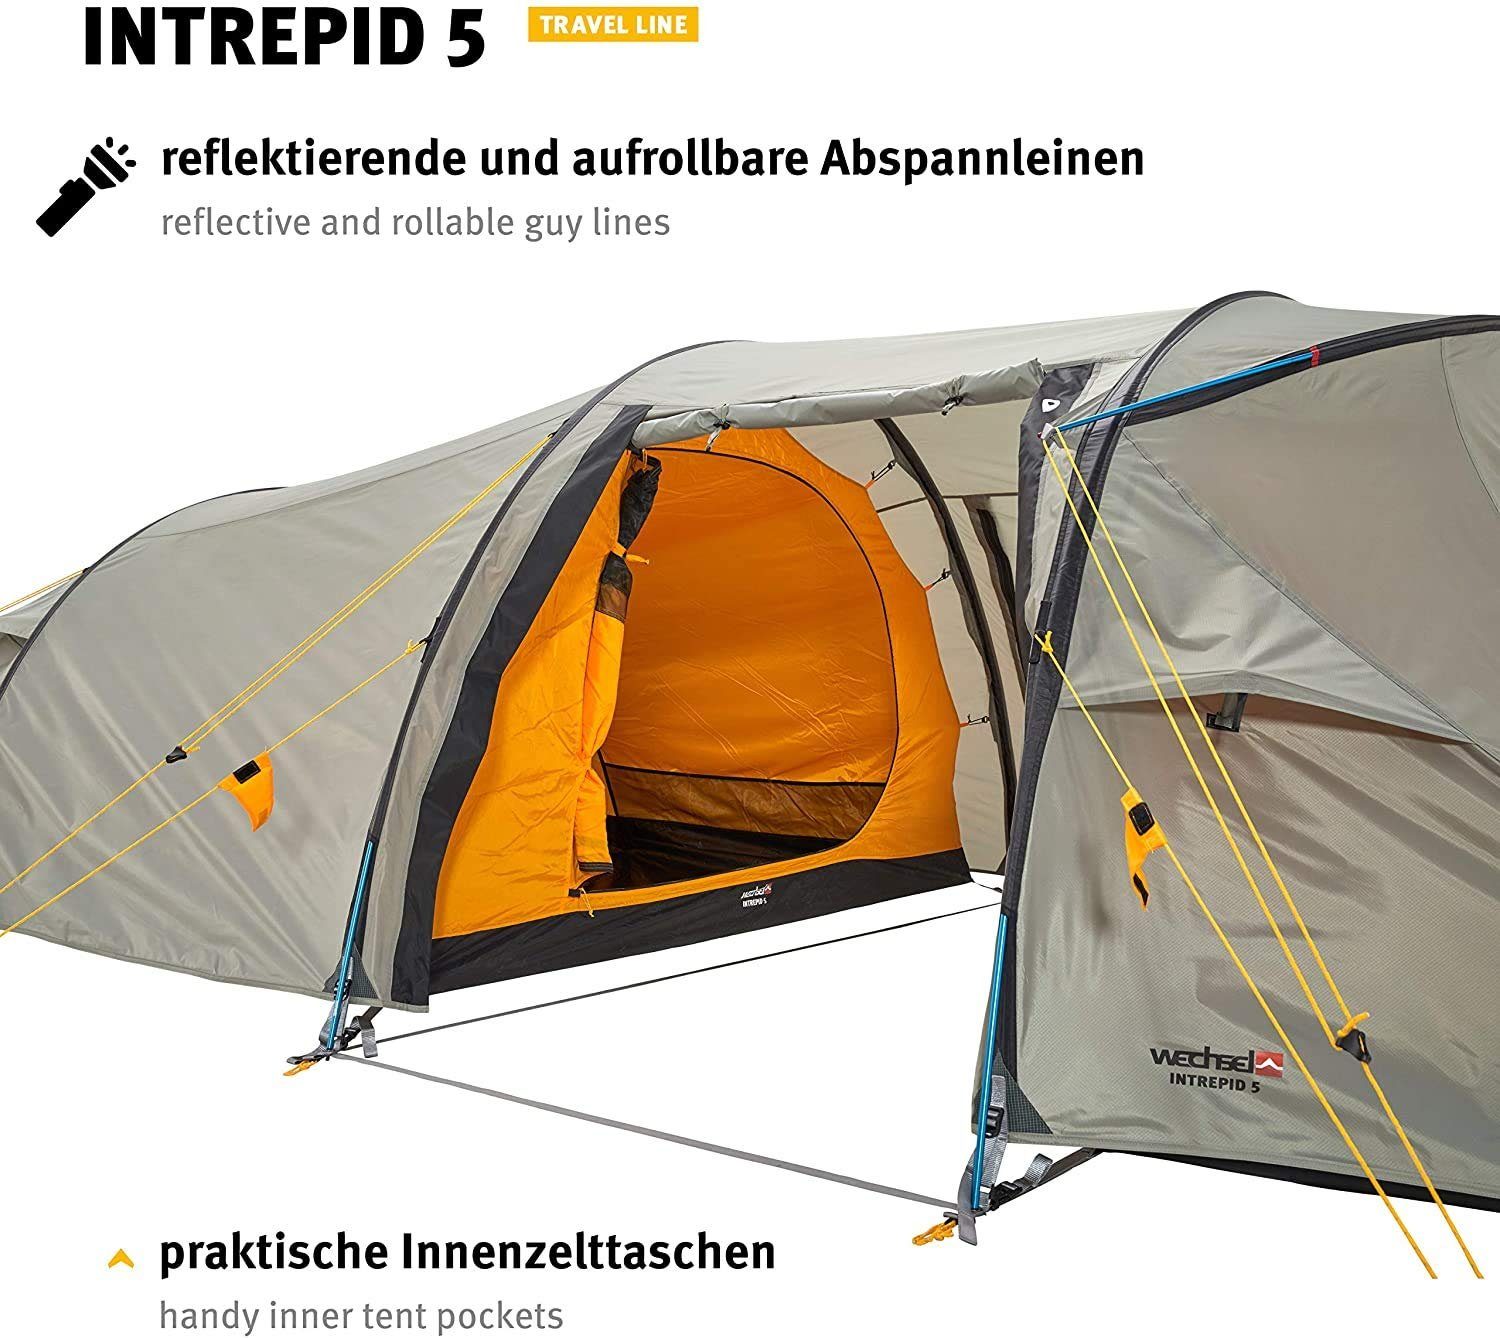 Wechsel Tents 5 5-Personen - Intrepid Travel Line Familienzelt, Tunnelzelt - 5 Personen